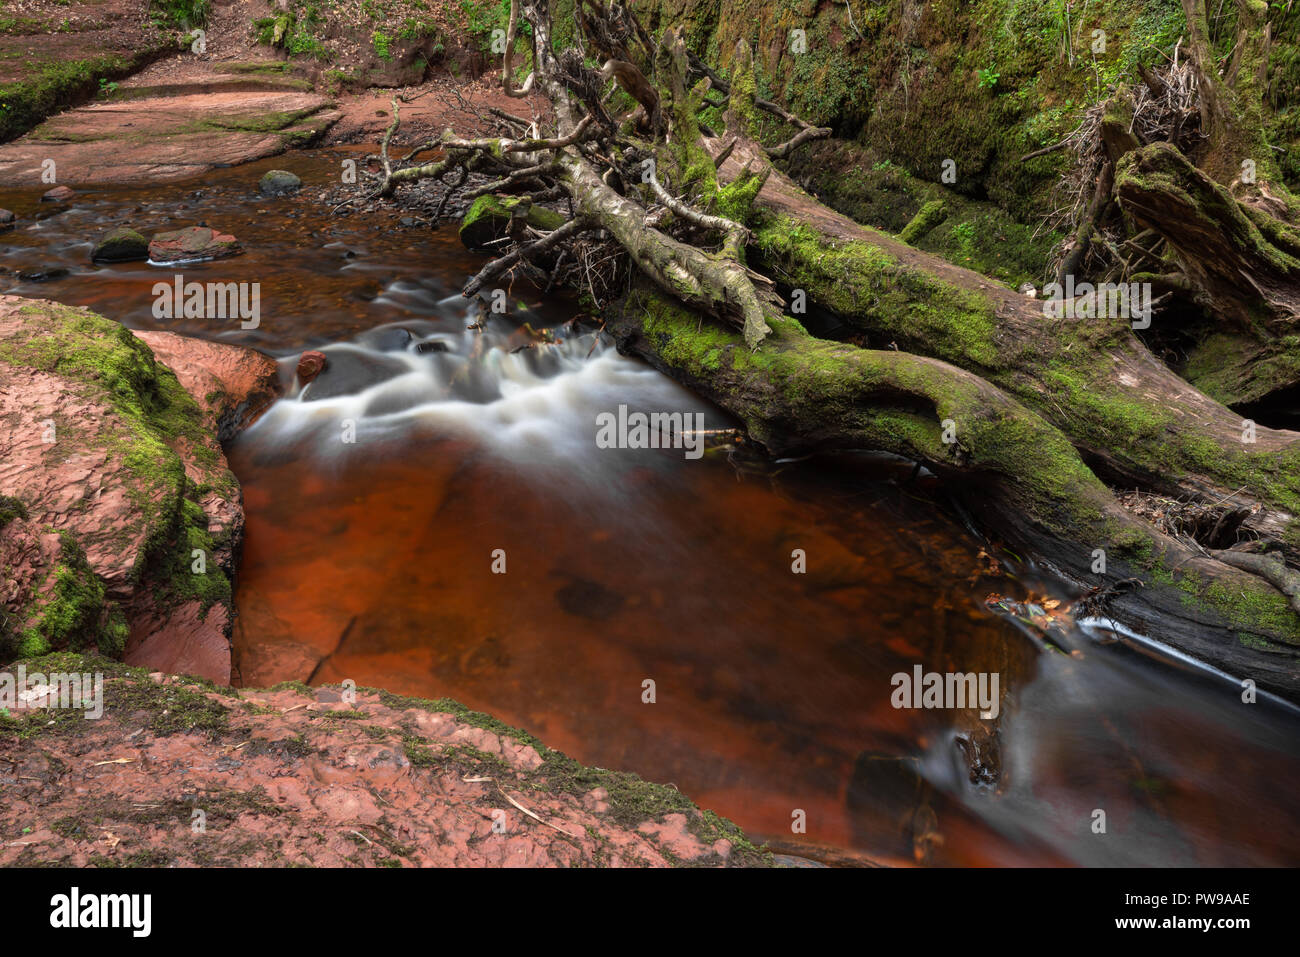 Blood Red River in einem grünen Schlucht. Devil's Kanzel, Finnich Glen, in der Nähe von Killearn, Schottland, Vereinigtes Königreich Stockfoto